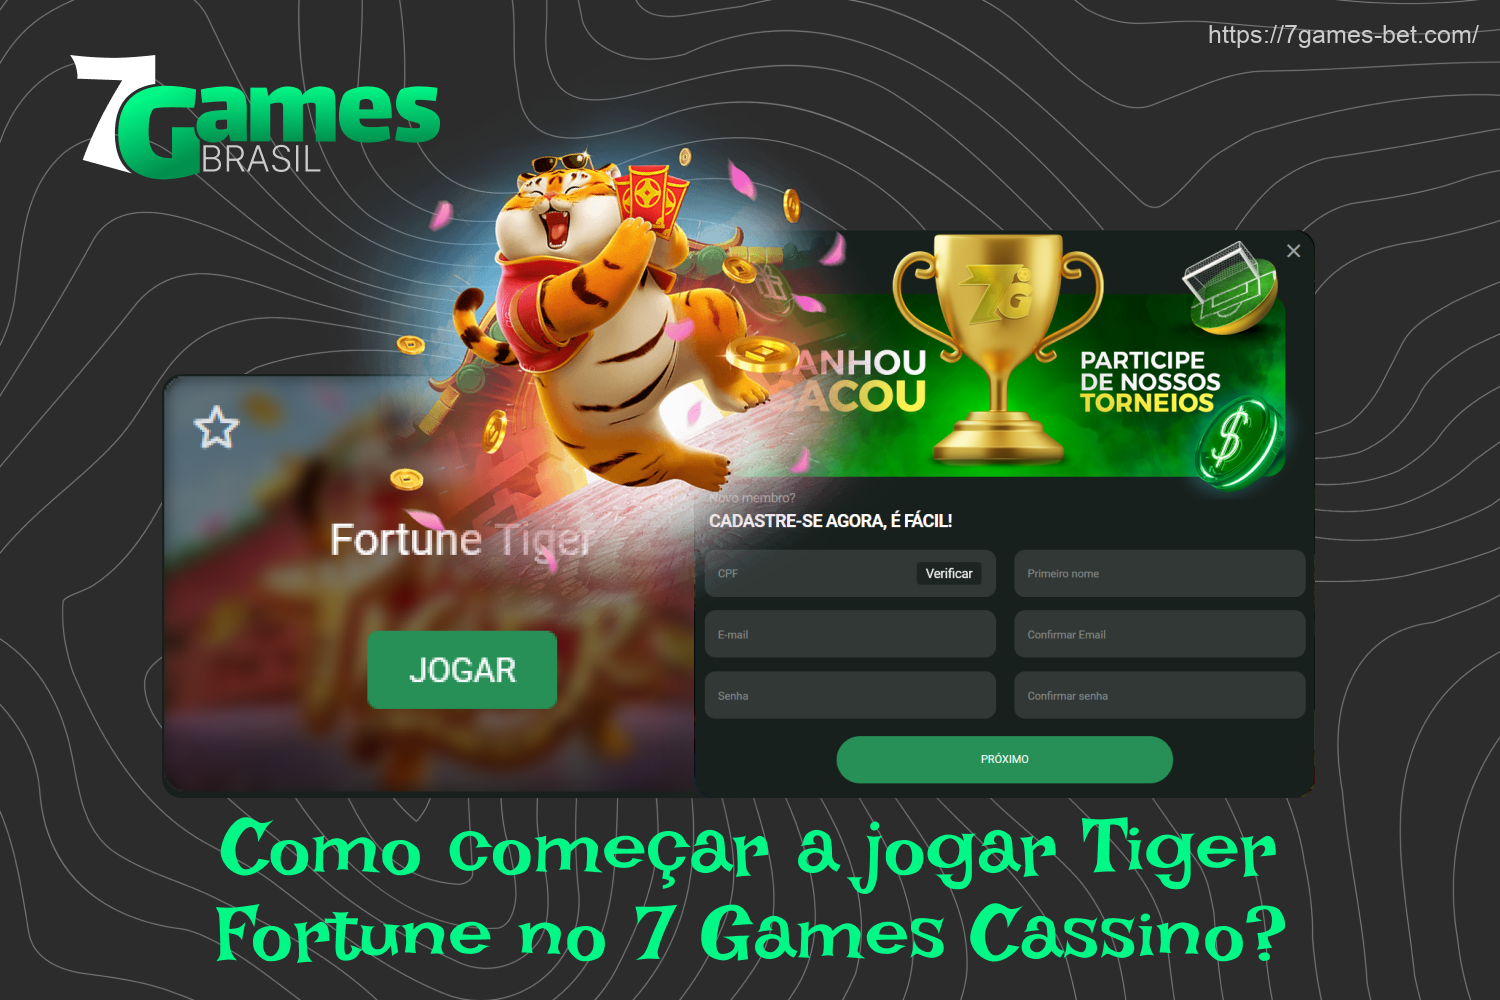 Os brasileiros podem começar a jogar Fortune Tiger no 7Games depois de se registrar e fazer um depósito